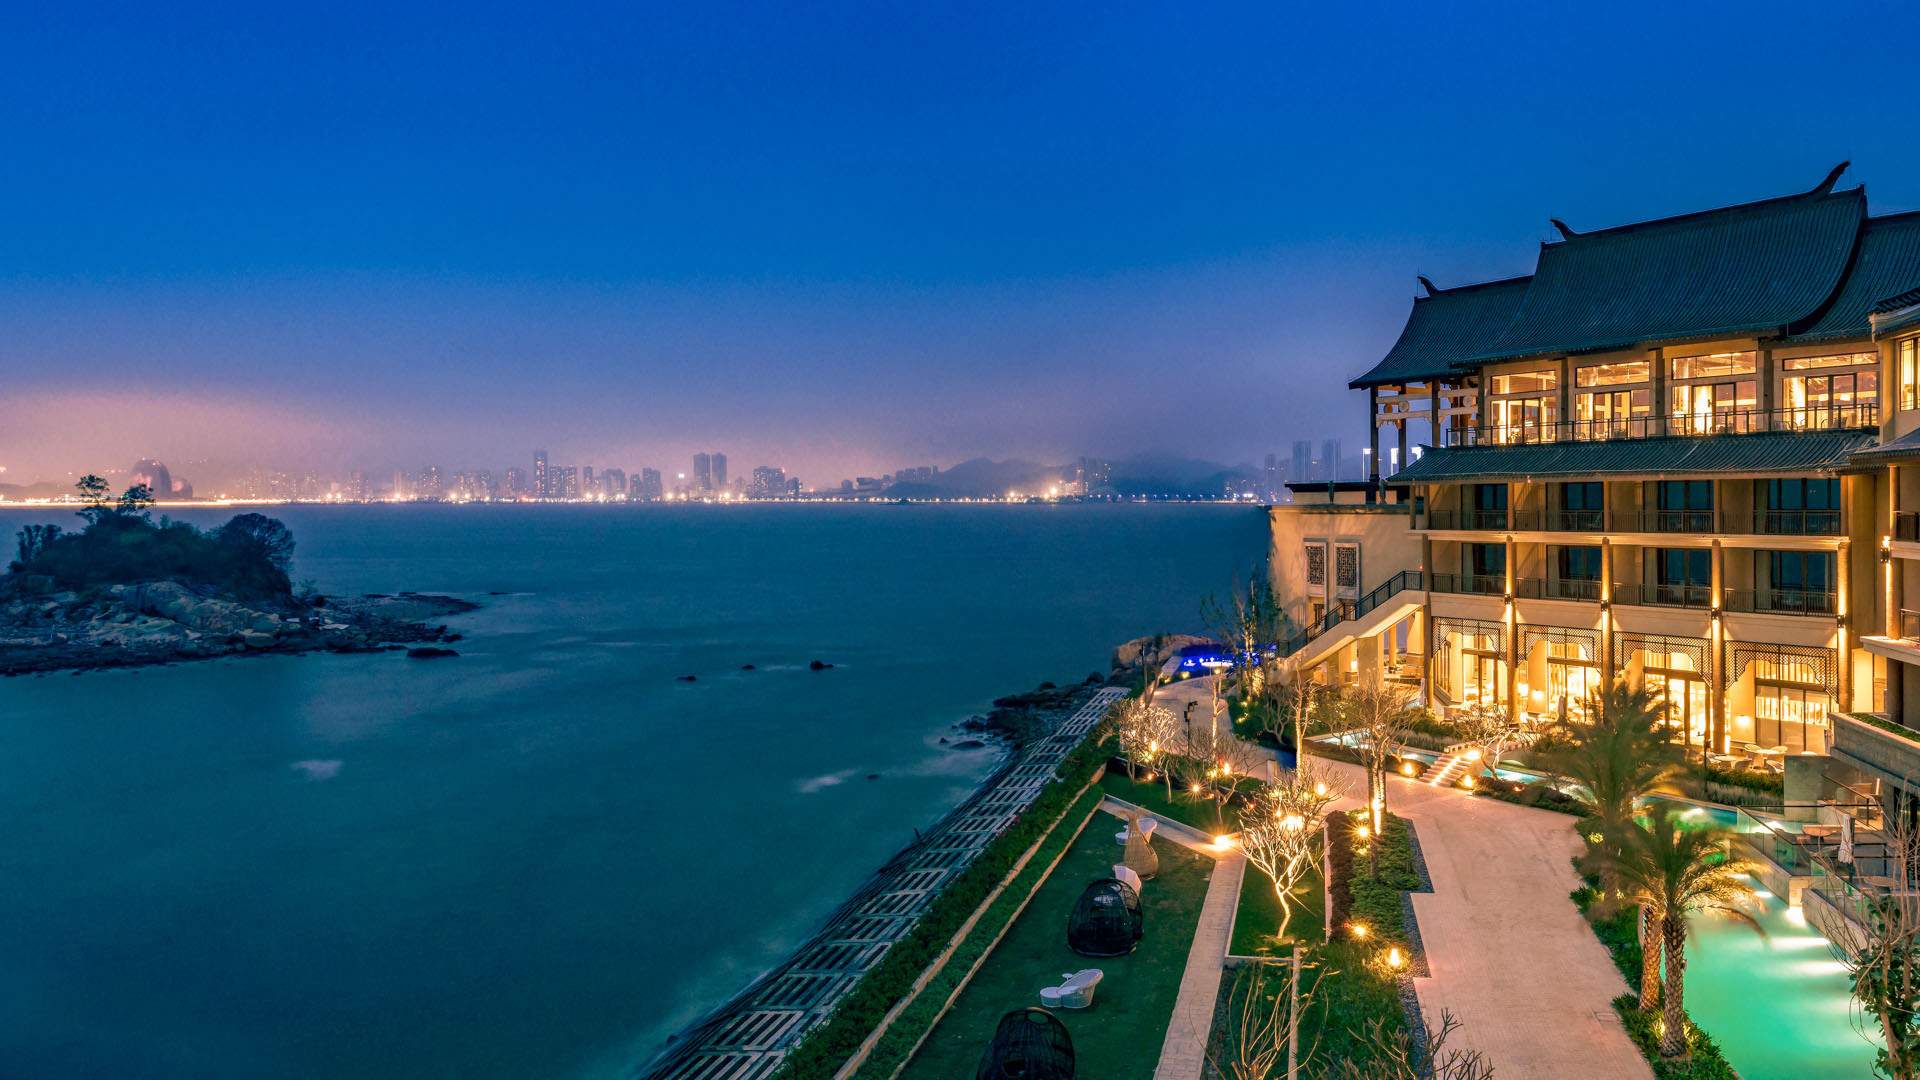 珠海凤凰湾悦椿酒店3月26日开业 正式接受宾客预订